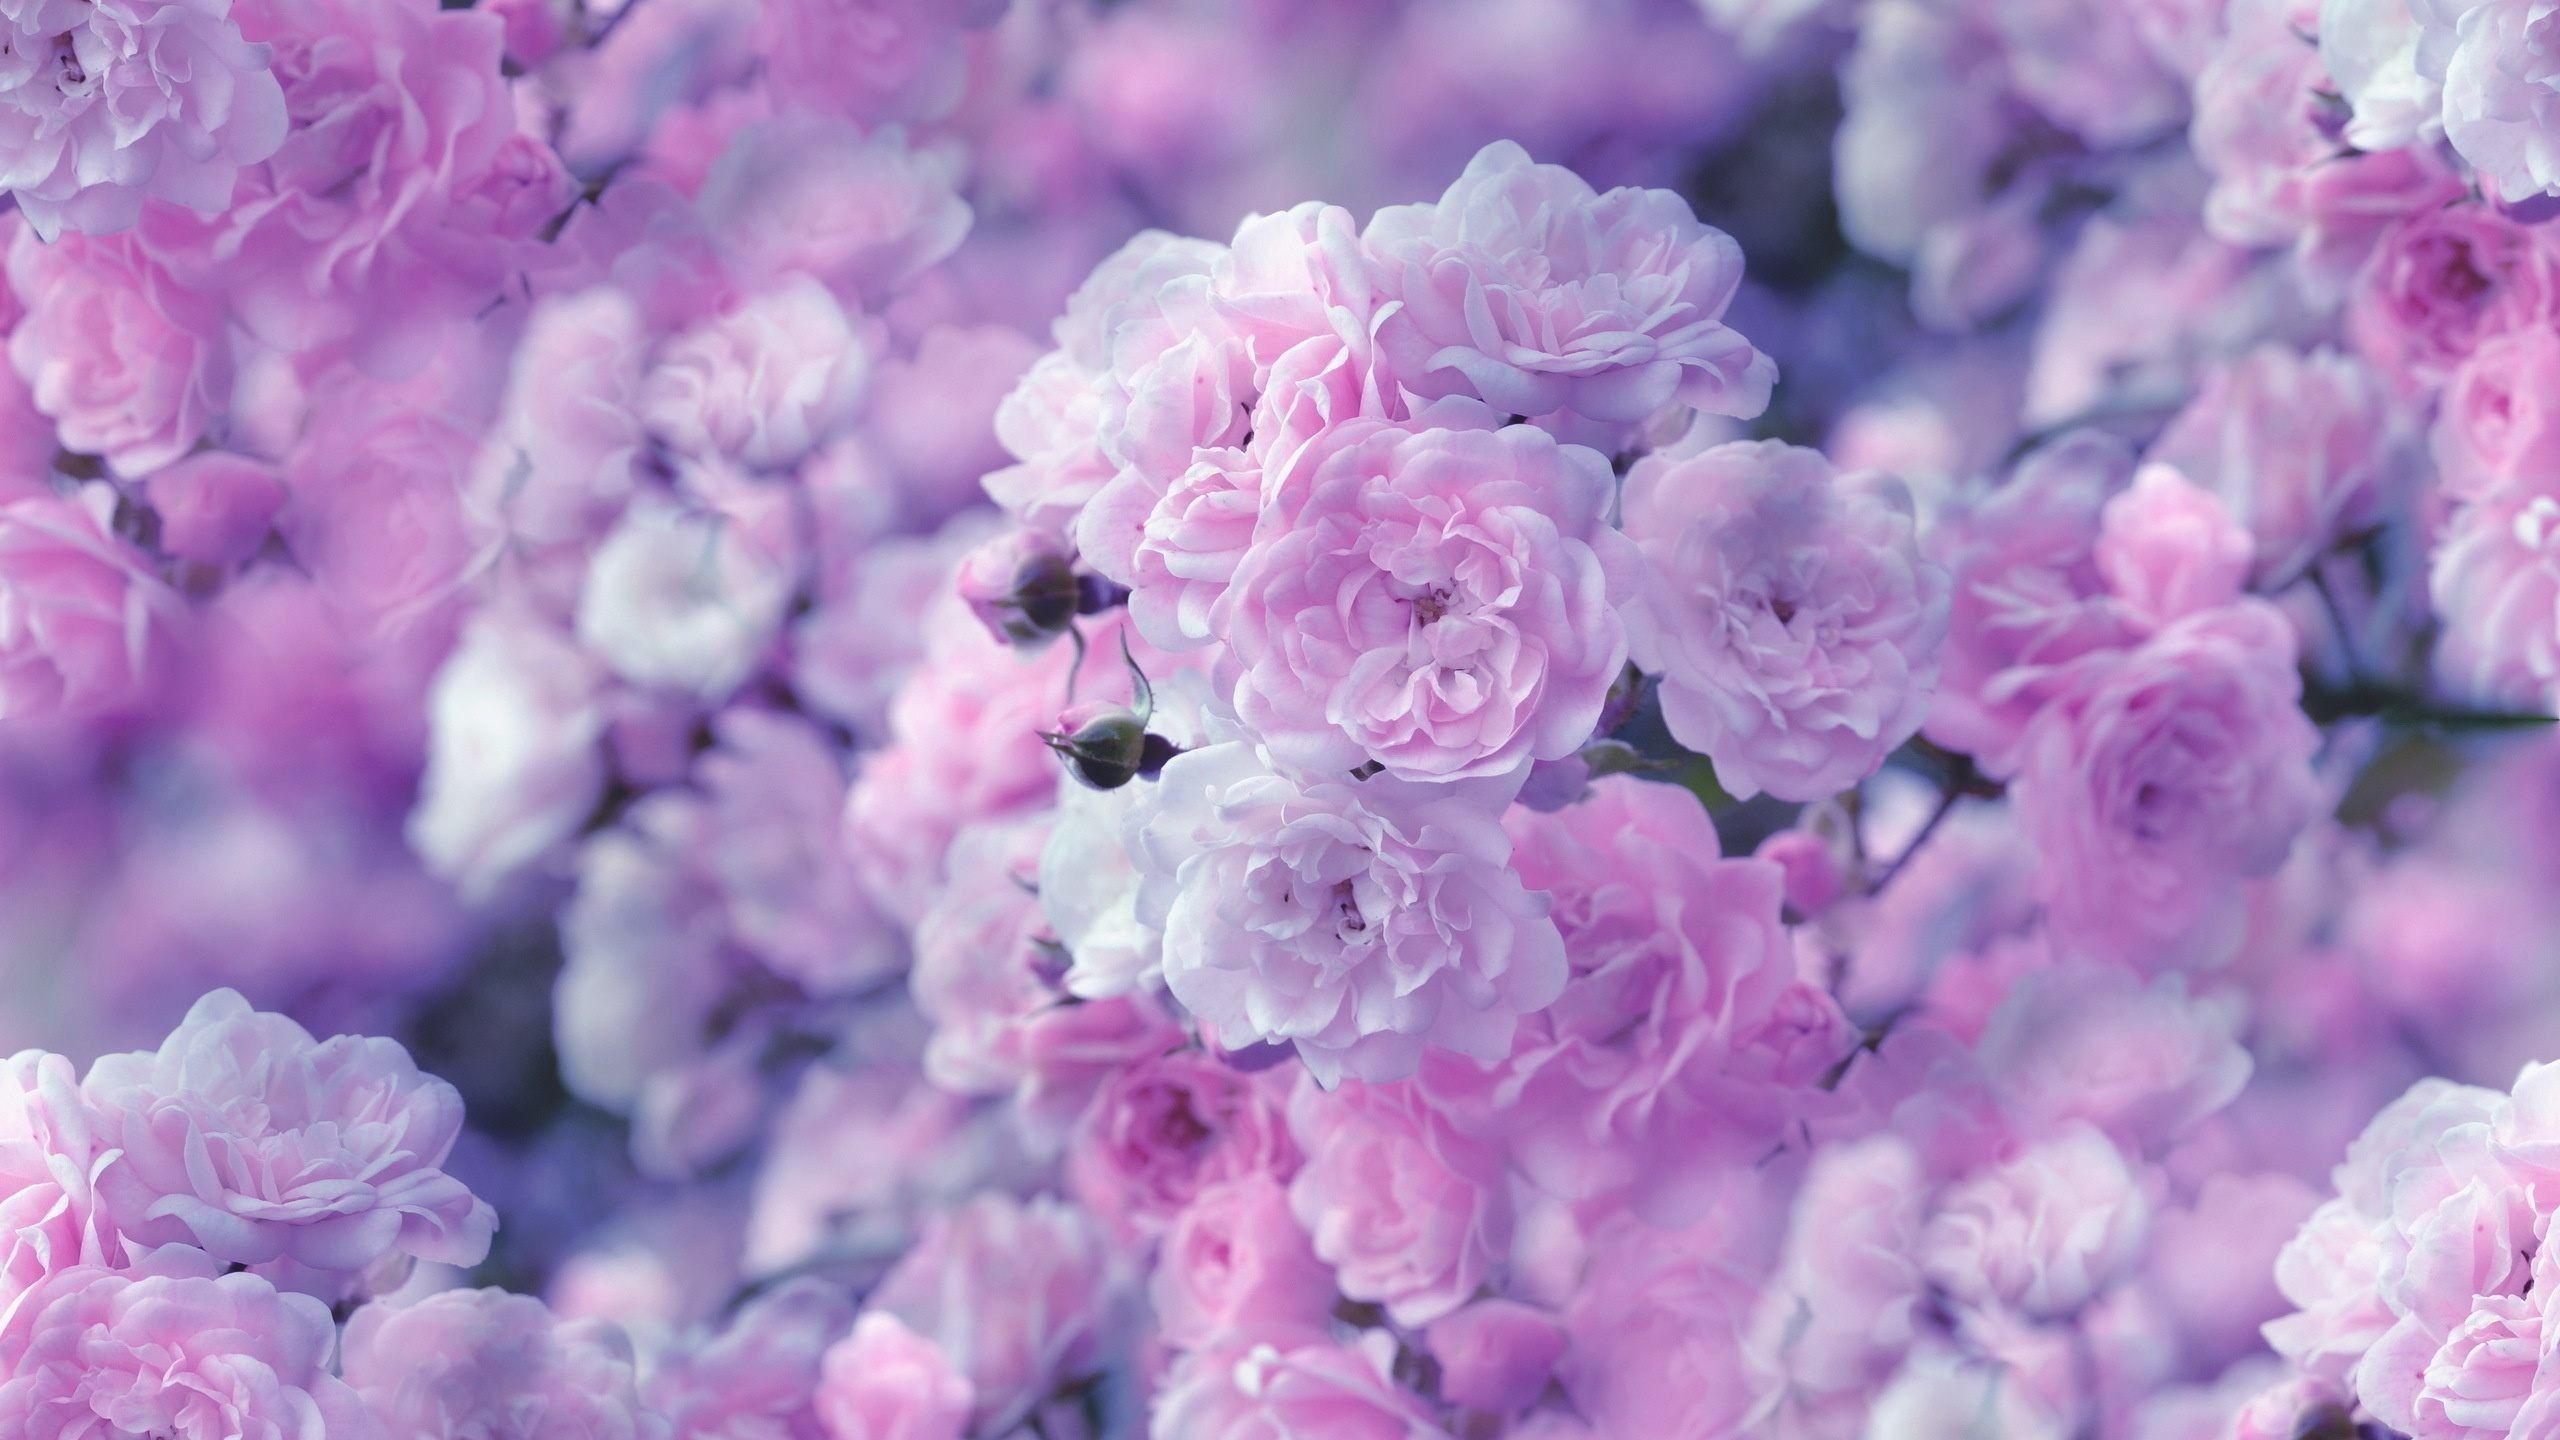 Hình nền hoa màu tím 2560x1440 - Thẩm mỹ hoa màu hồng và màu tím - Hình nền 2560x1440